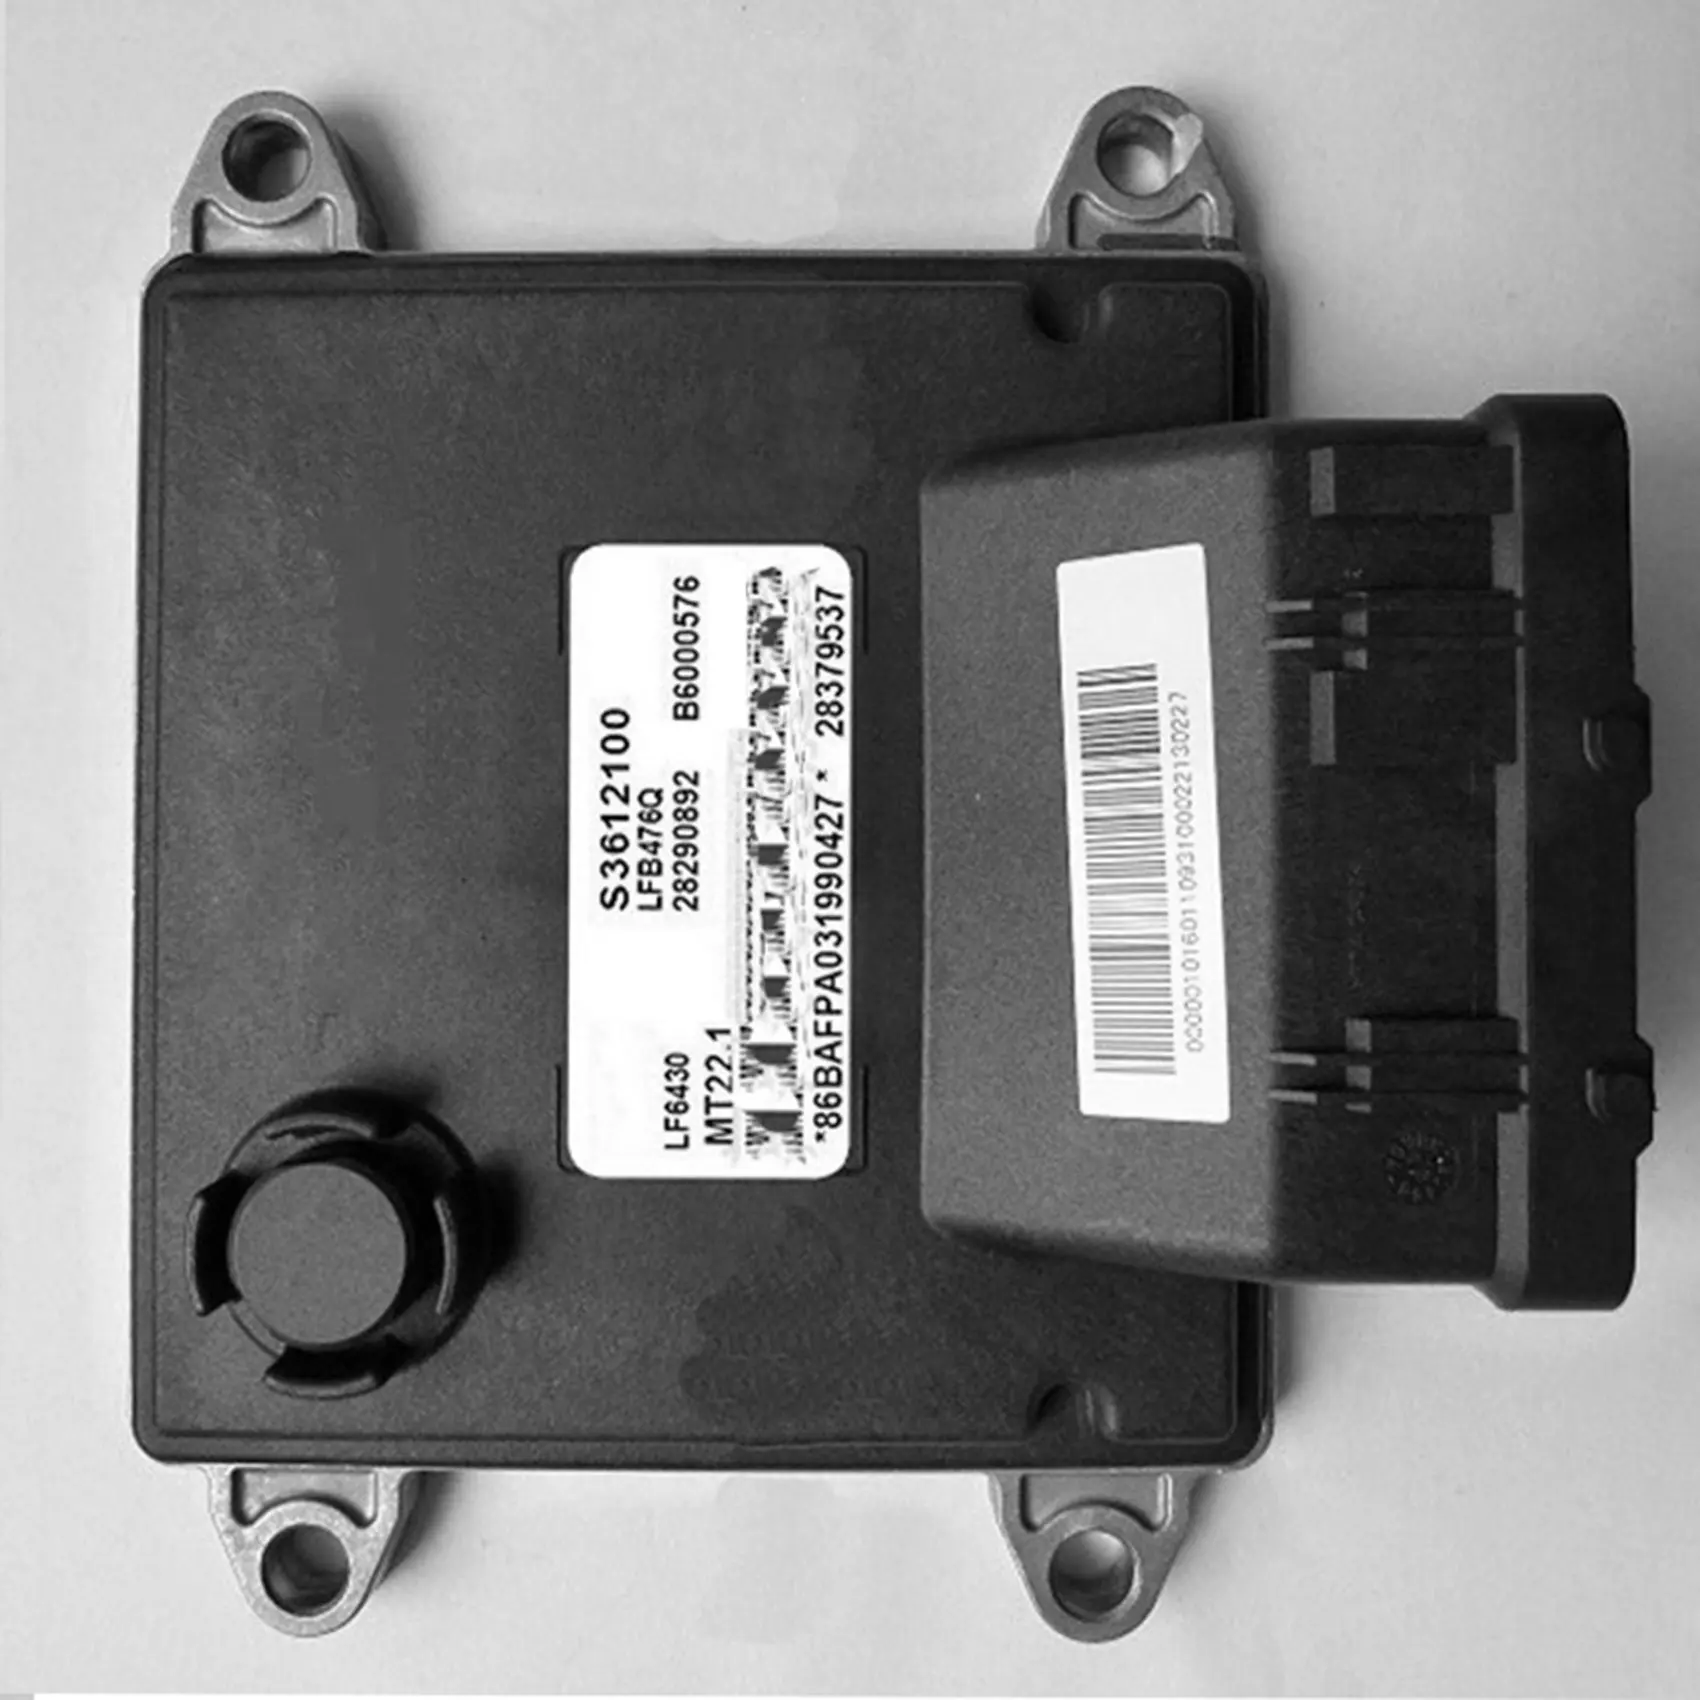 ECU do Motor do Carro Conselho de Computador Unidade de Controle Eletrônico MT22.1 B6000576 28290892 S3612100 para LiFan5